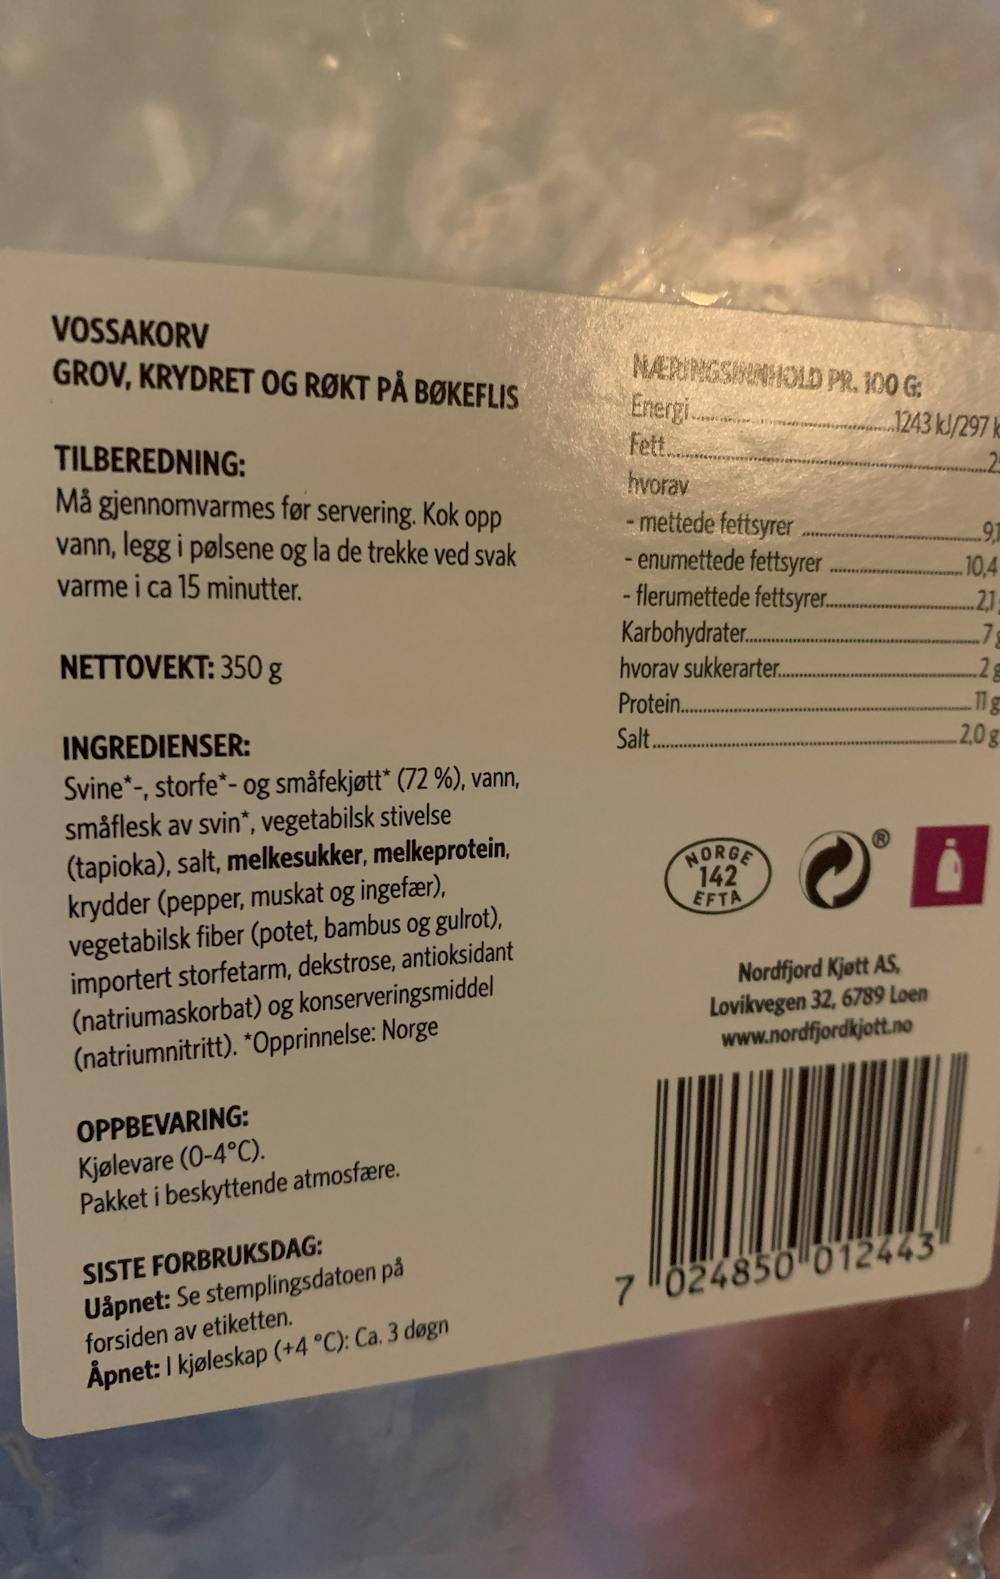 Ingredienslisten til Vossakorv, Nordfjord